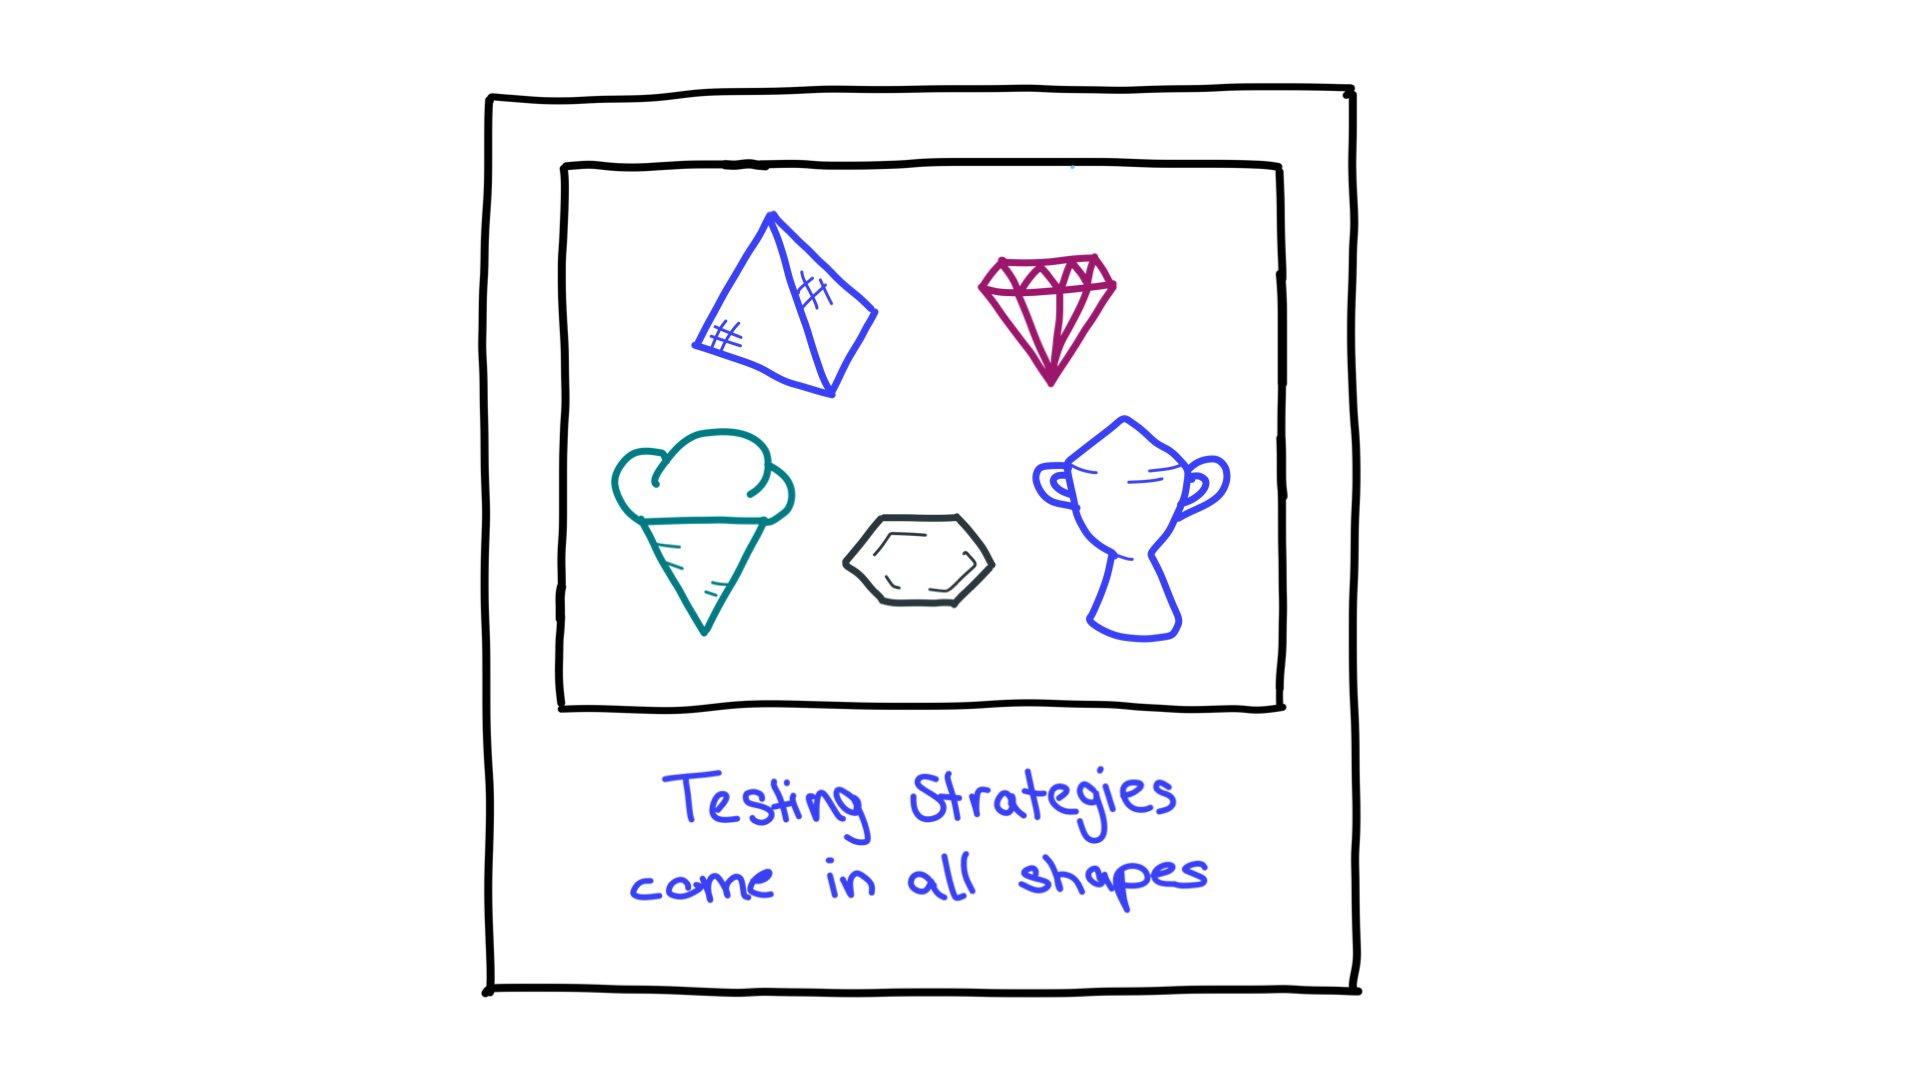 כמה דוגמאות לבדיקת צורות
 אסטרטגיות: פירמידה, יהלום חתוך, גביע גלידה, משושה וגביע.